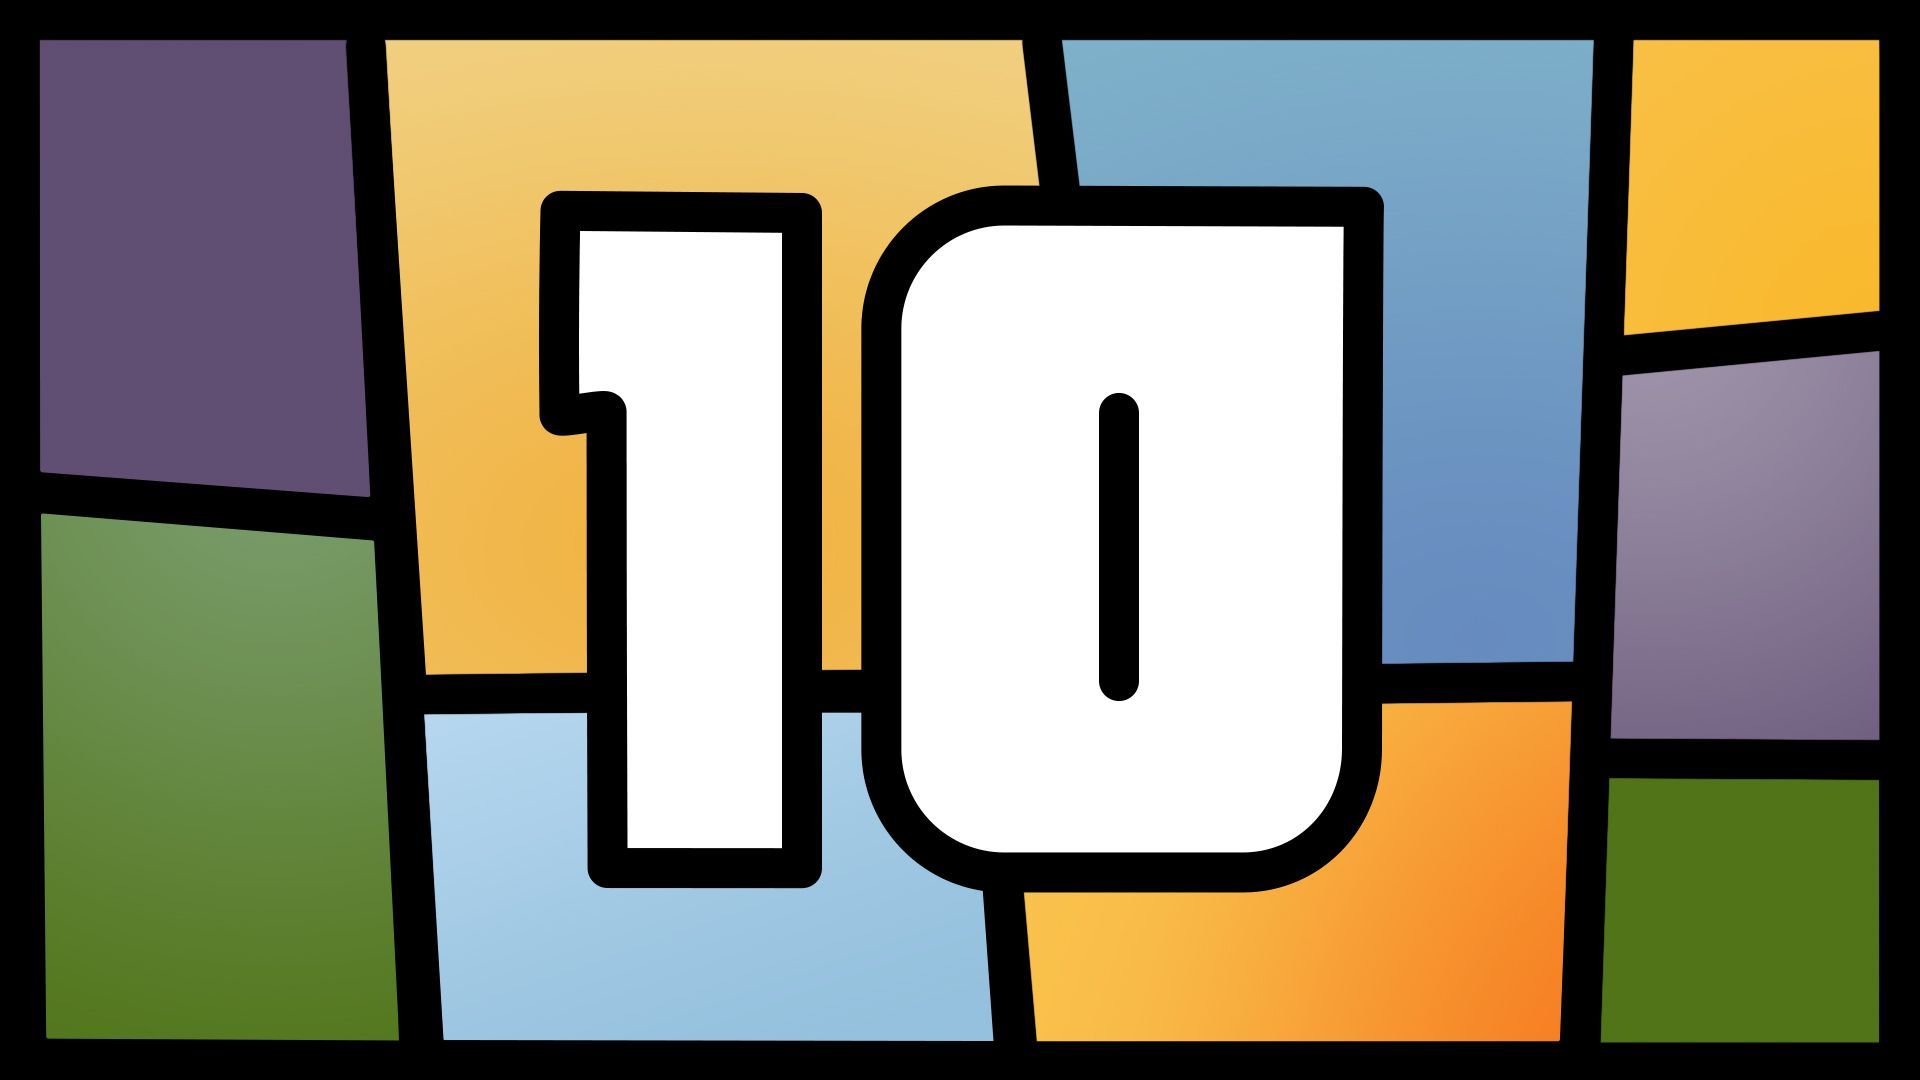 Grand Theft Auto V turns 10